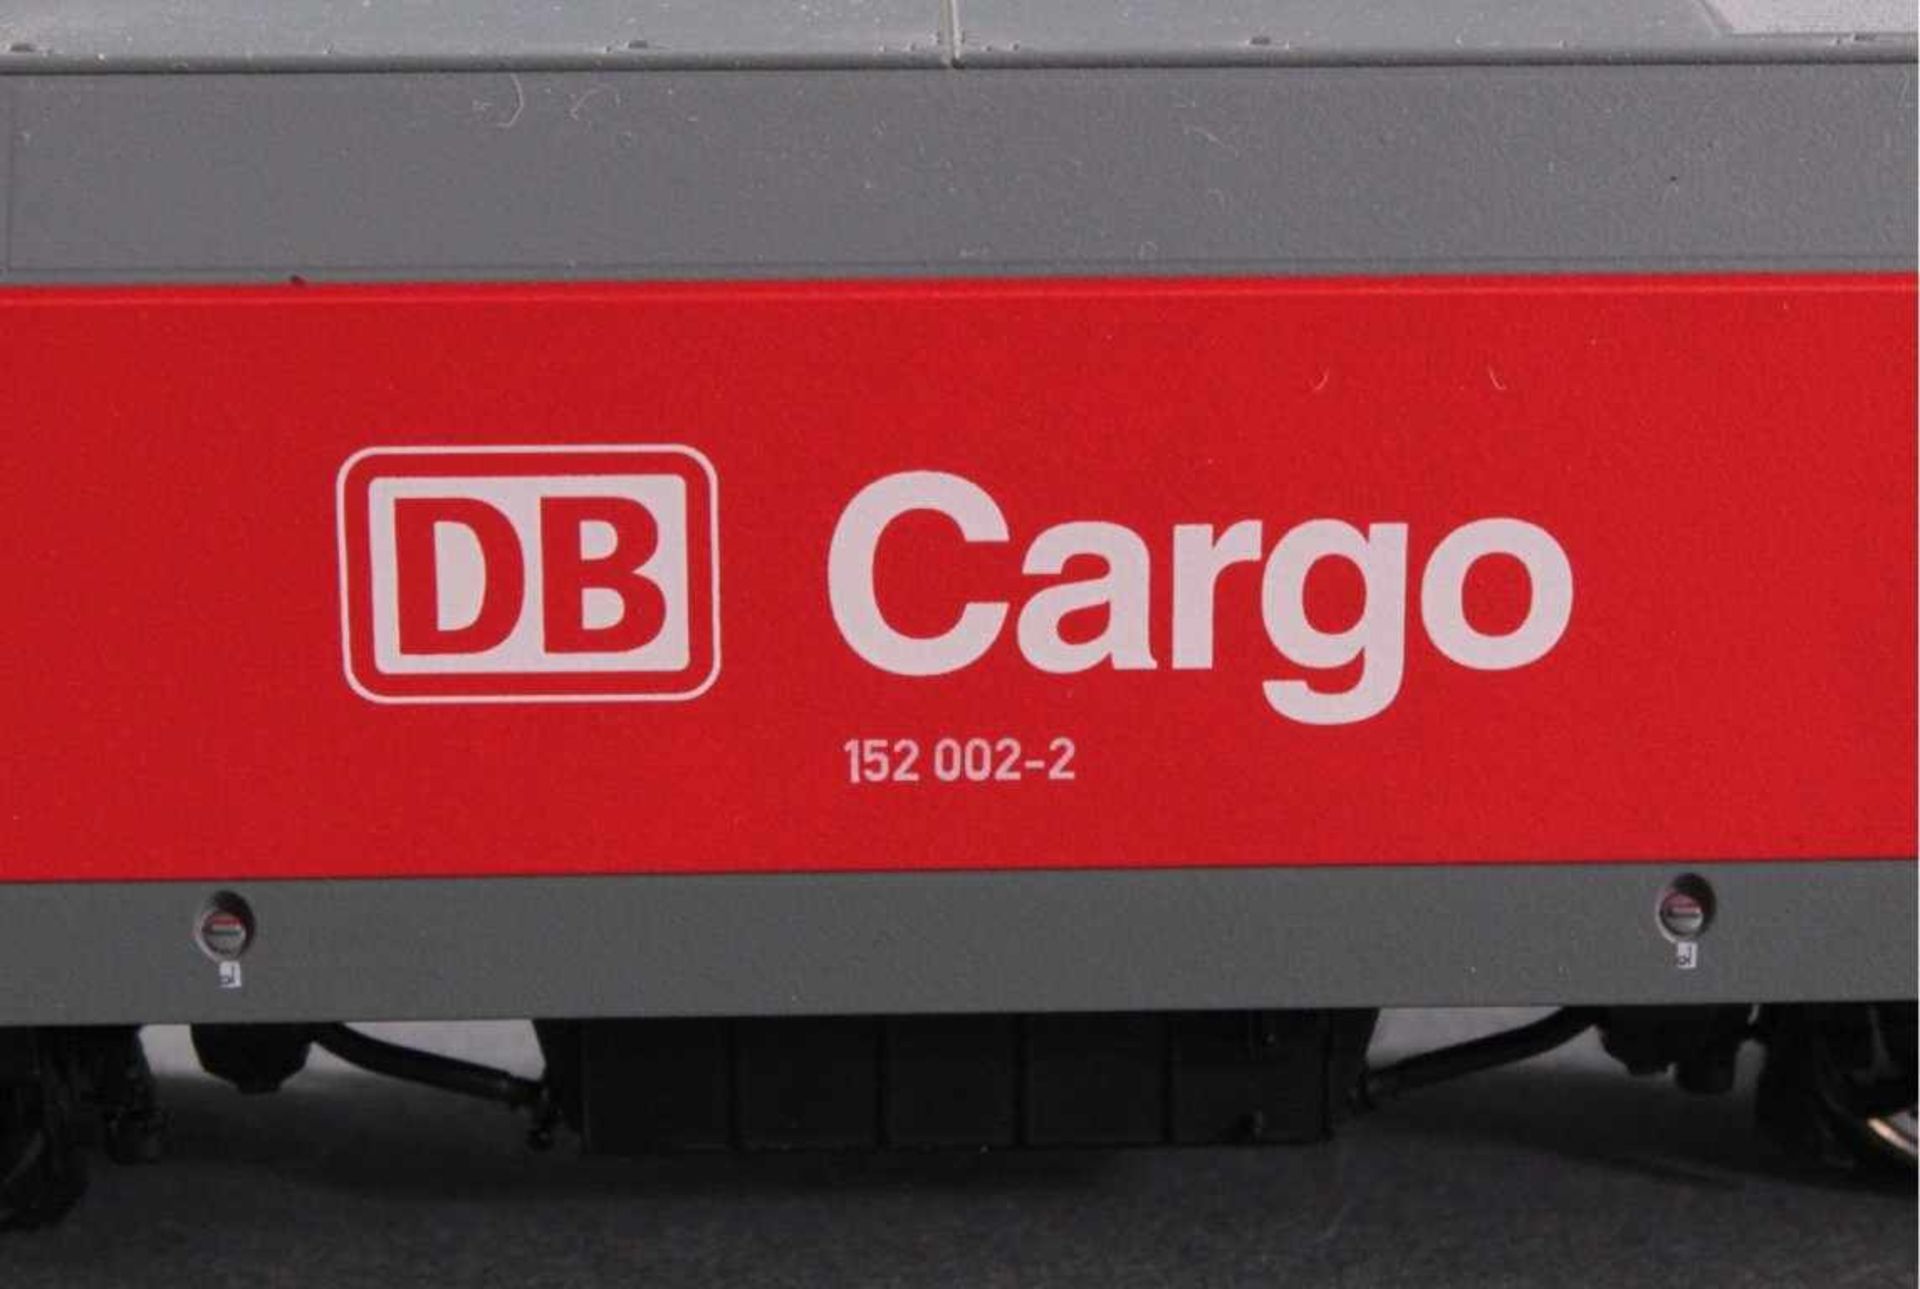 Märklin H0 37350 E-Lok BR 1520 002-2 DB Cargo - Image 2 of 2